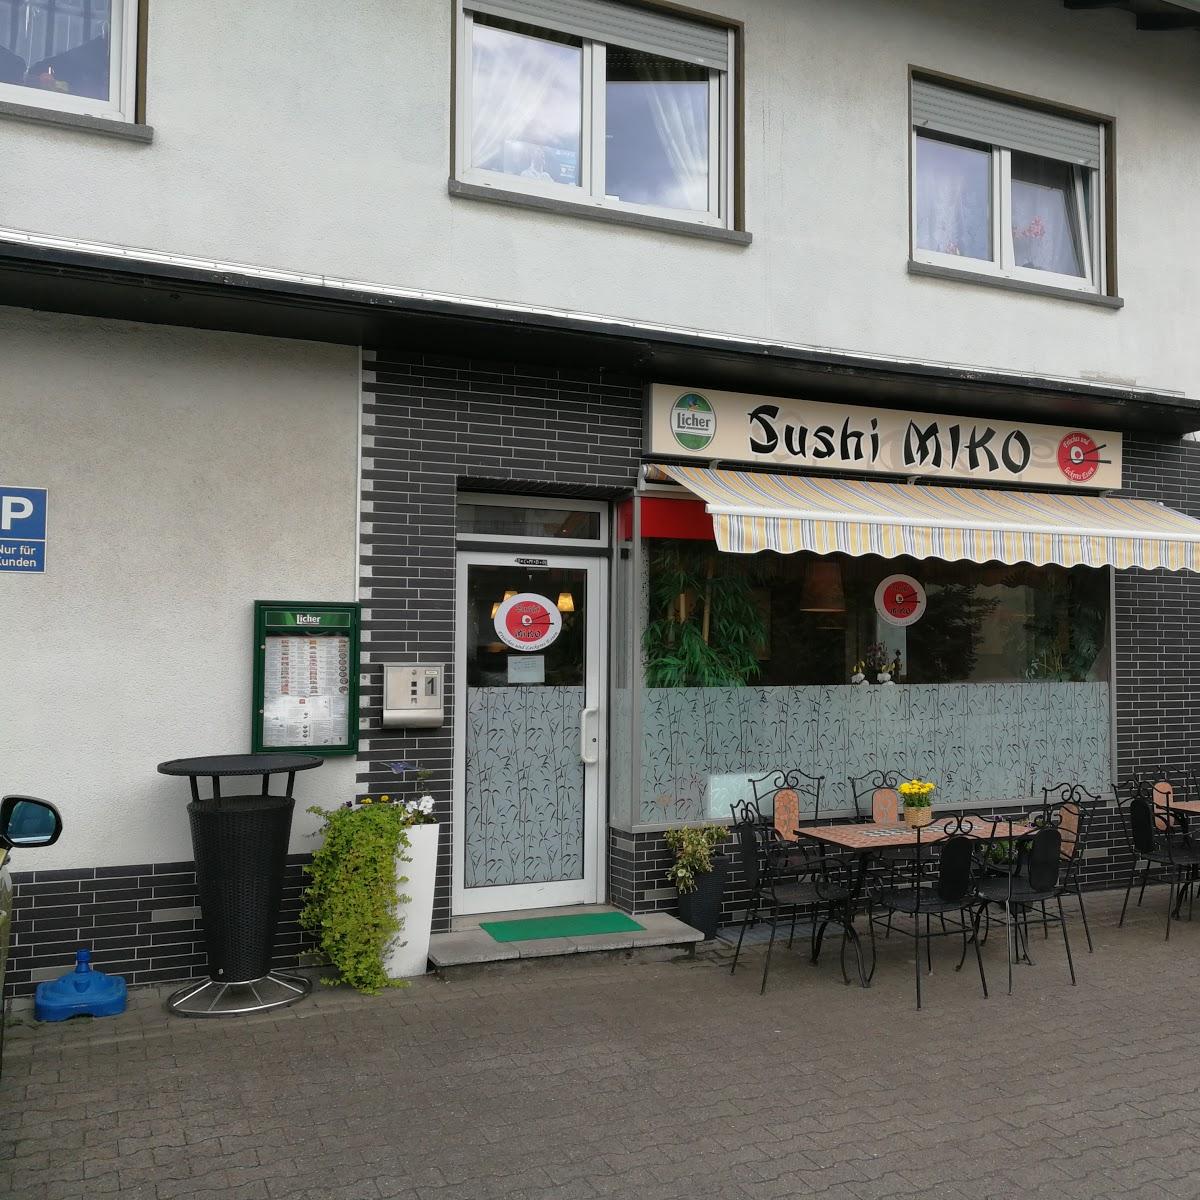 Restaurant "Sushi Miko" in Frankfurt am Main